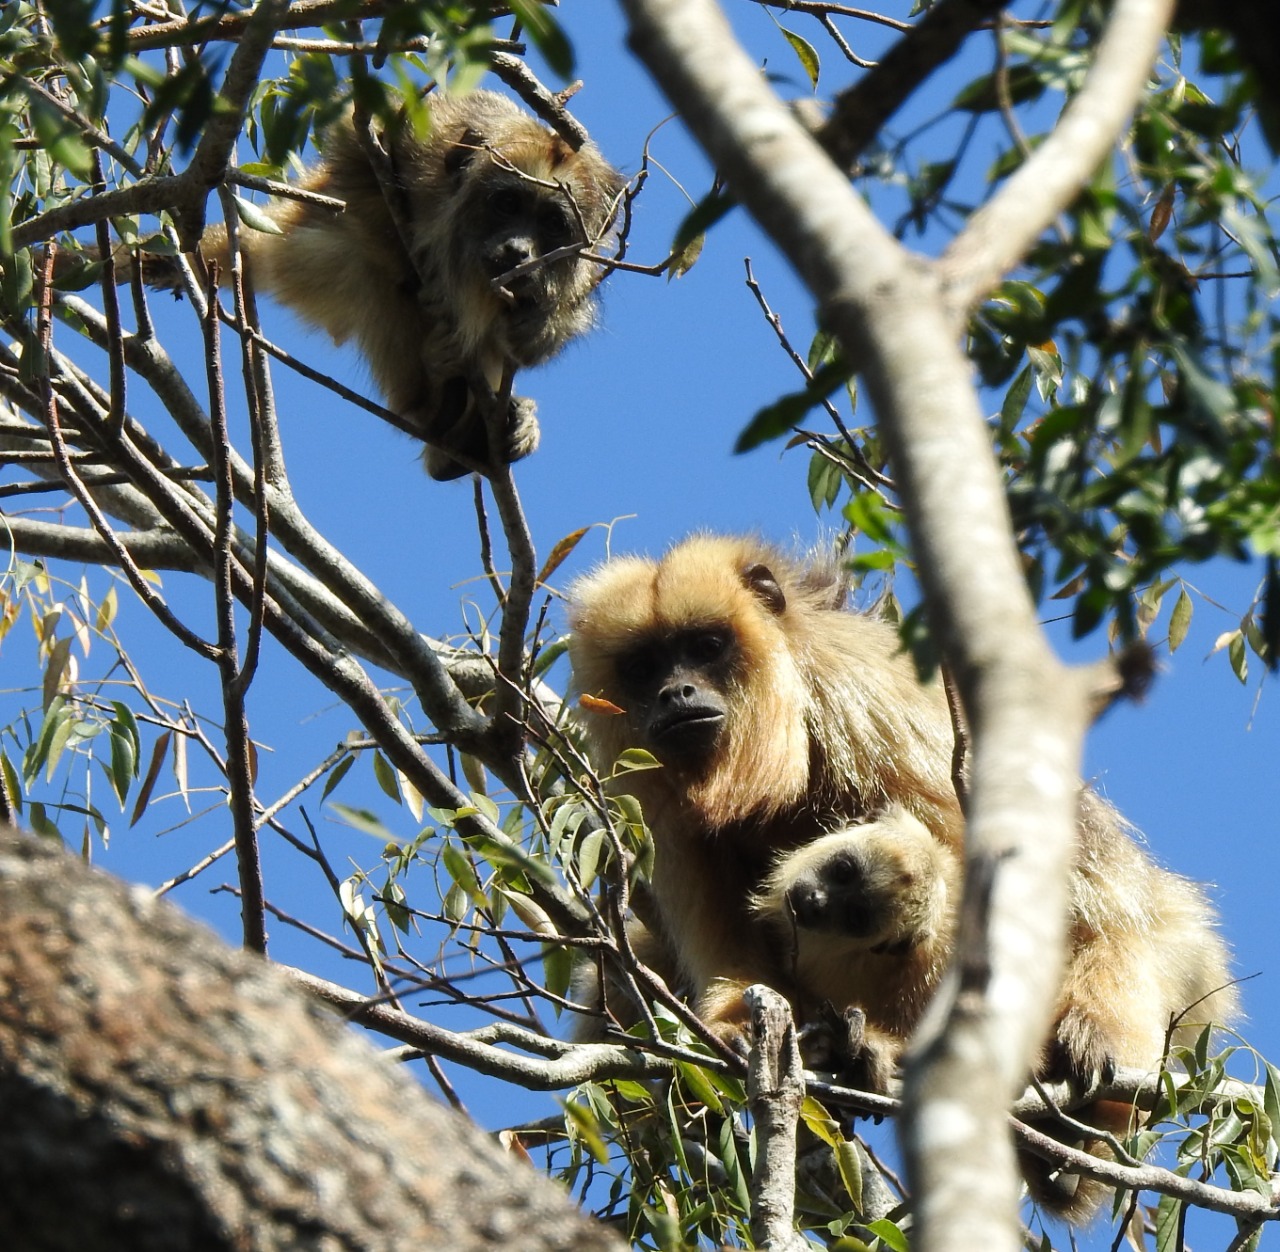 Algunas especies de primates ya se ven obligadas a vivir con los cambios provocados por los humanos en su hábitat como vivir en áreas con menos cubierta de árboles y, por lo tanto, menos refugio y comida